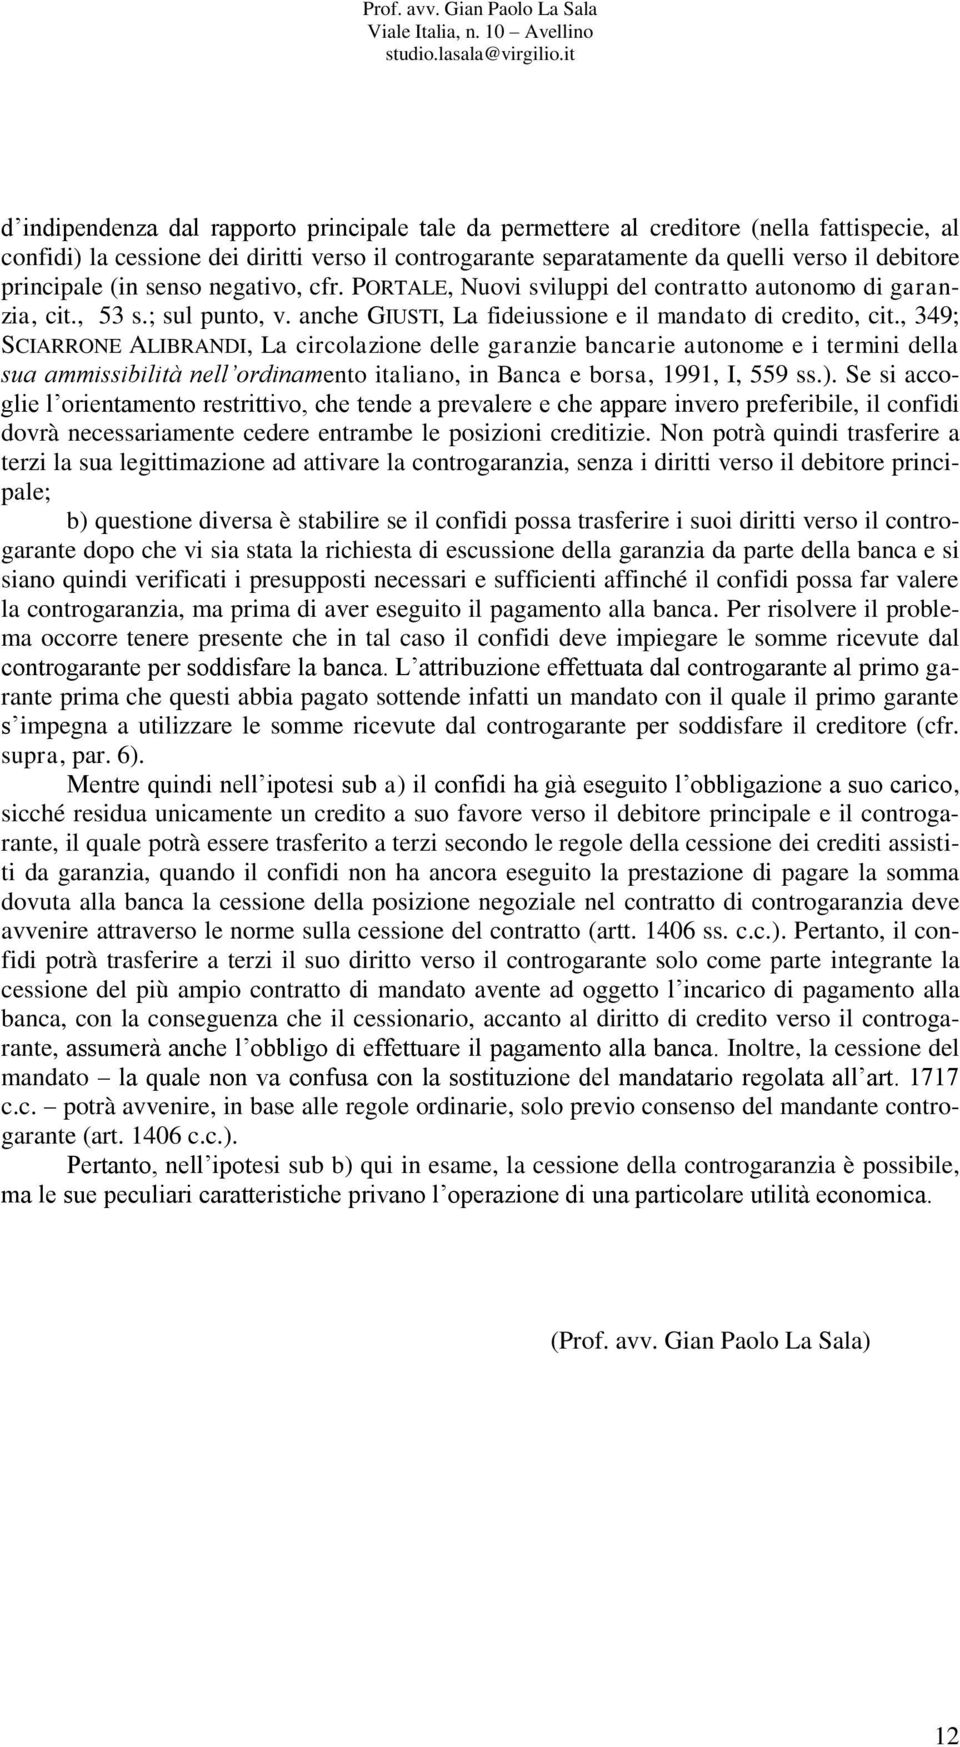 , 349; SCIARRONE ALIBRANDI, La circolazione delle garanzie bancarie autonome e i termini della sua ammissibilità nell ordinamento italiano, in Banca e borsa, 1991, I, 559 ss.).